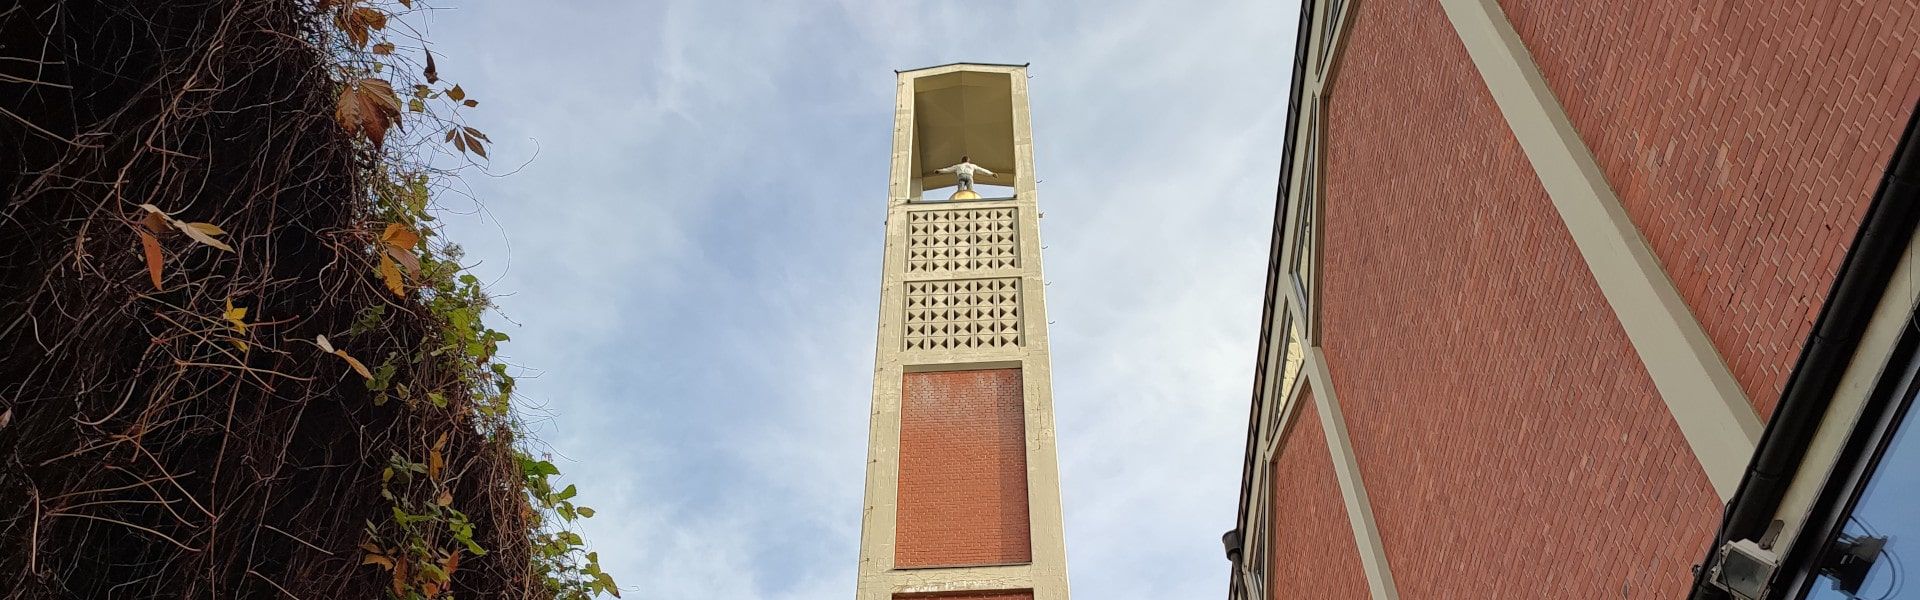 Kirchturm der Elisabethkirche, gesehen vom westlichen, dachlosen Seitenschiff. Foto (Ausschnitt): Stefan Ahr